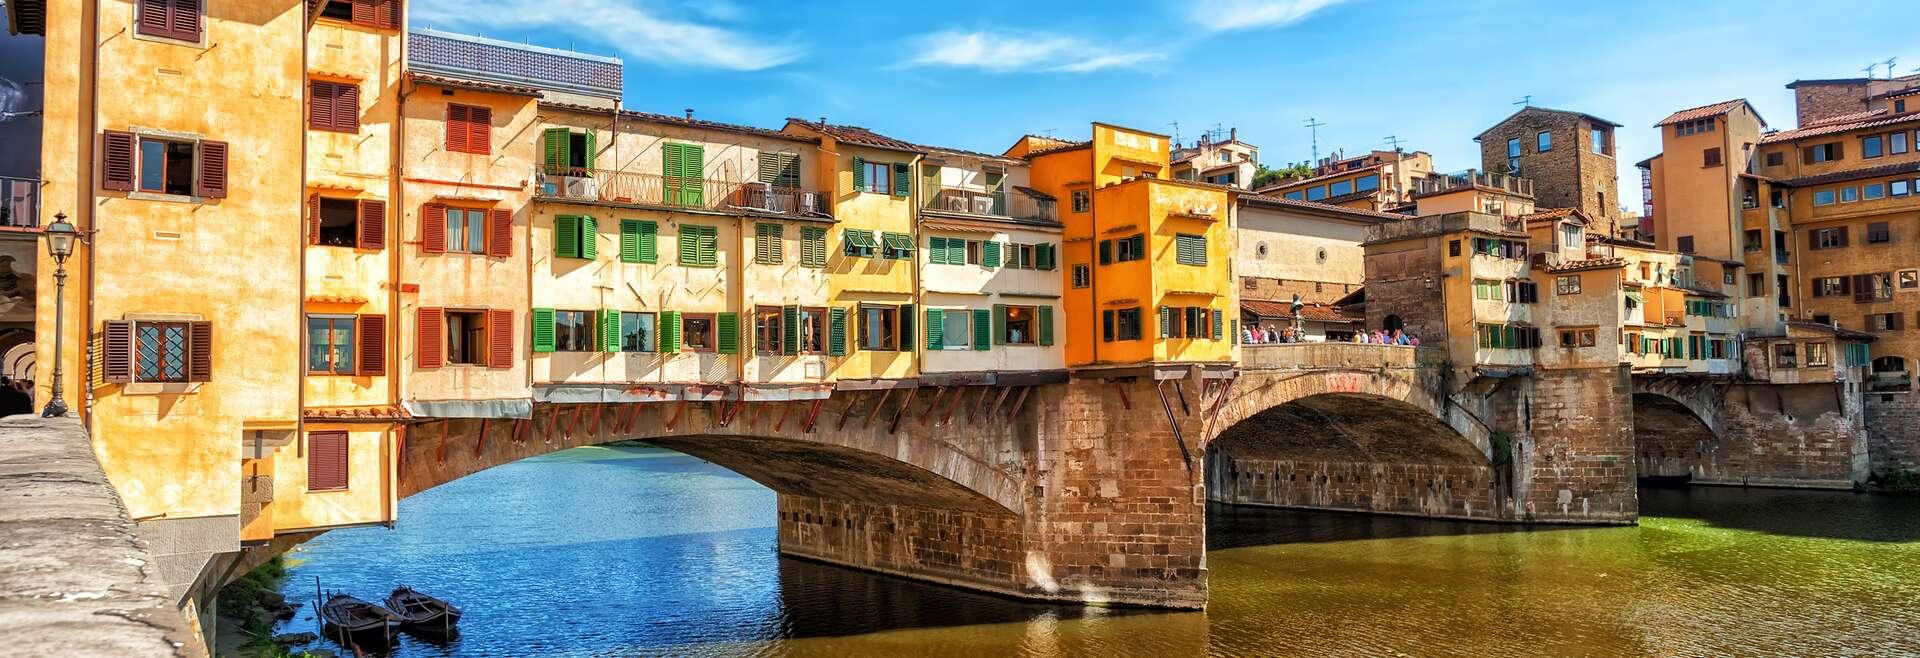 Sprachaufenthalt Italien, Florenz, Ponte Vecchio